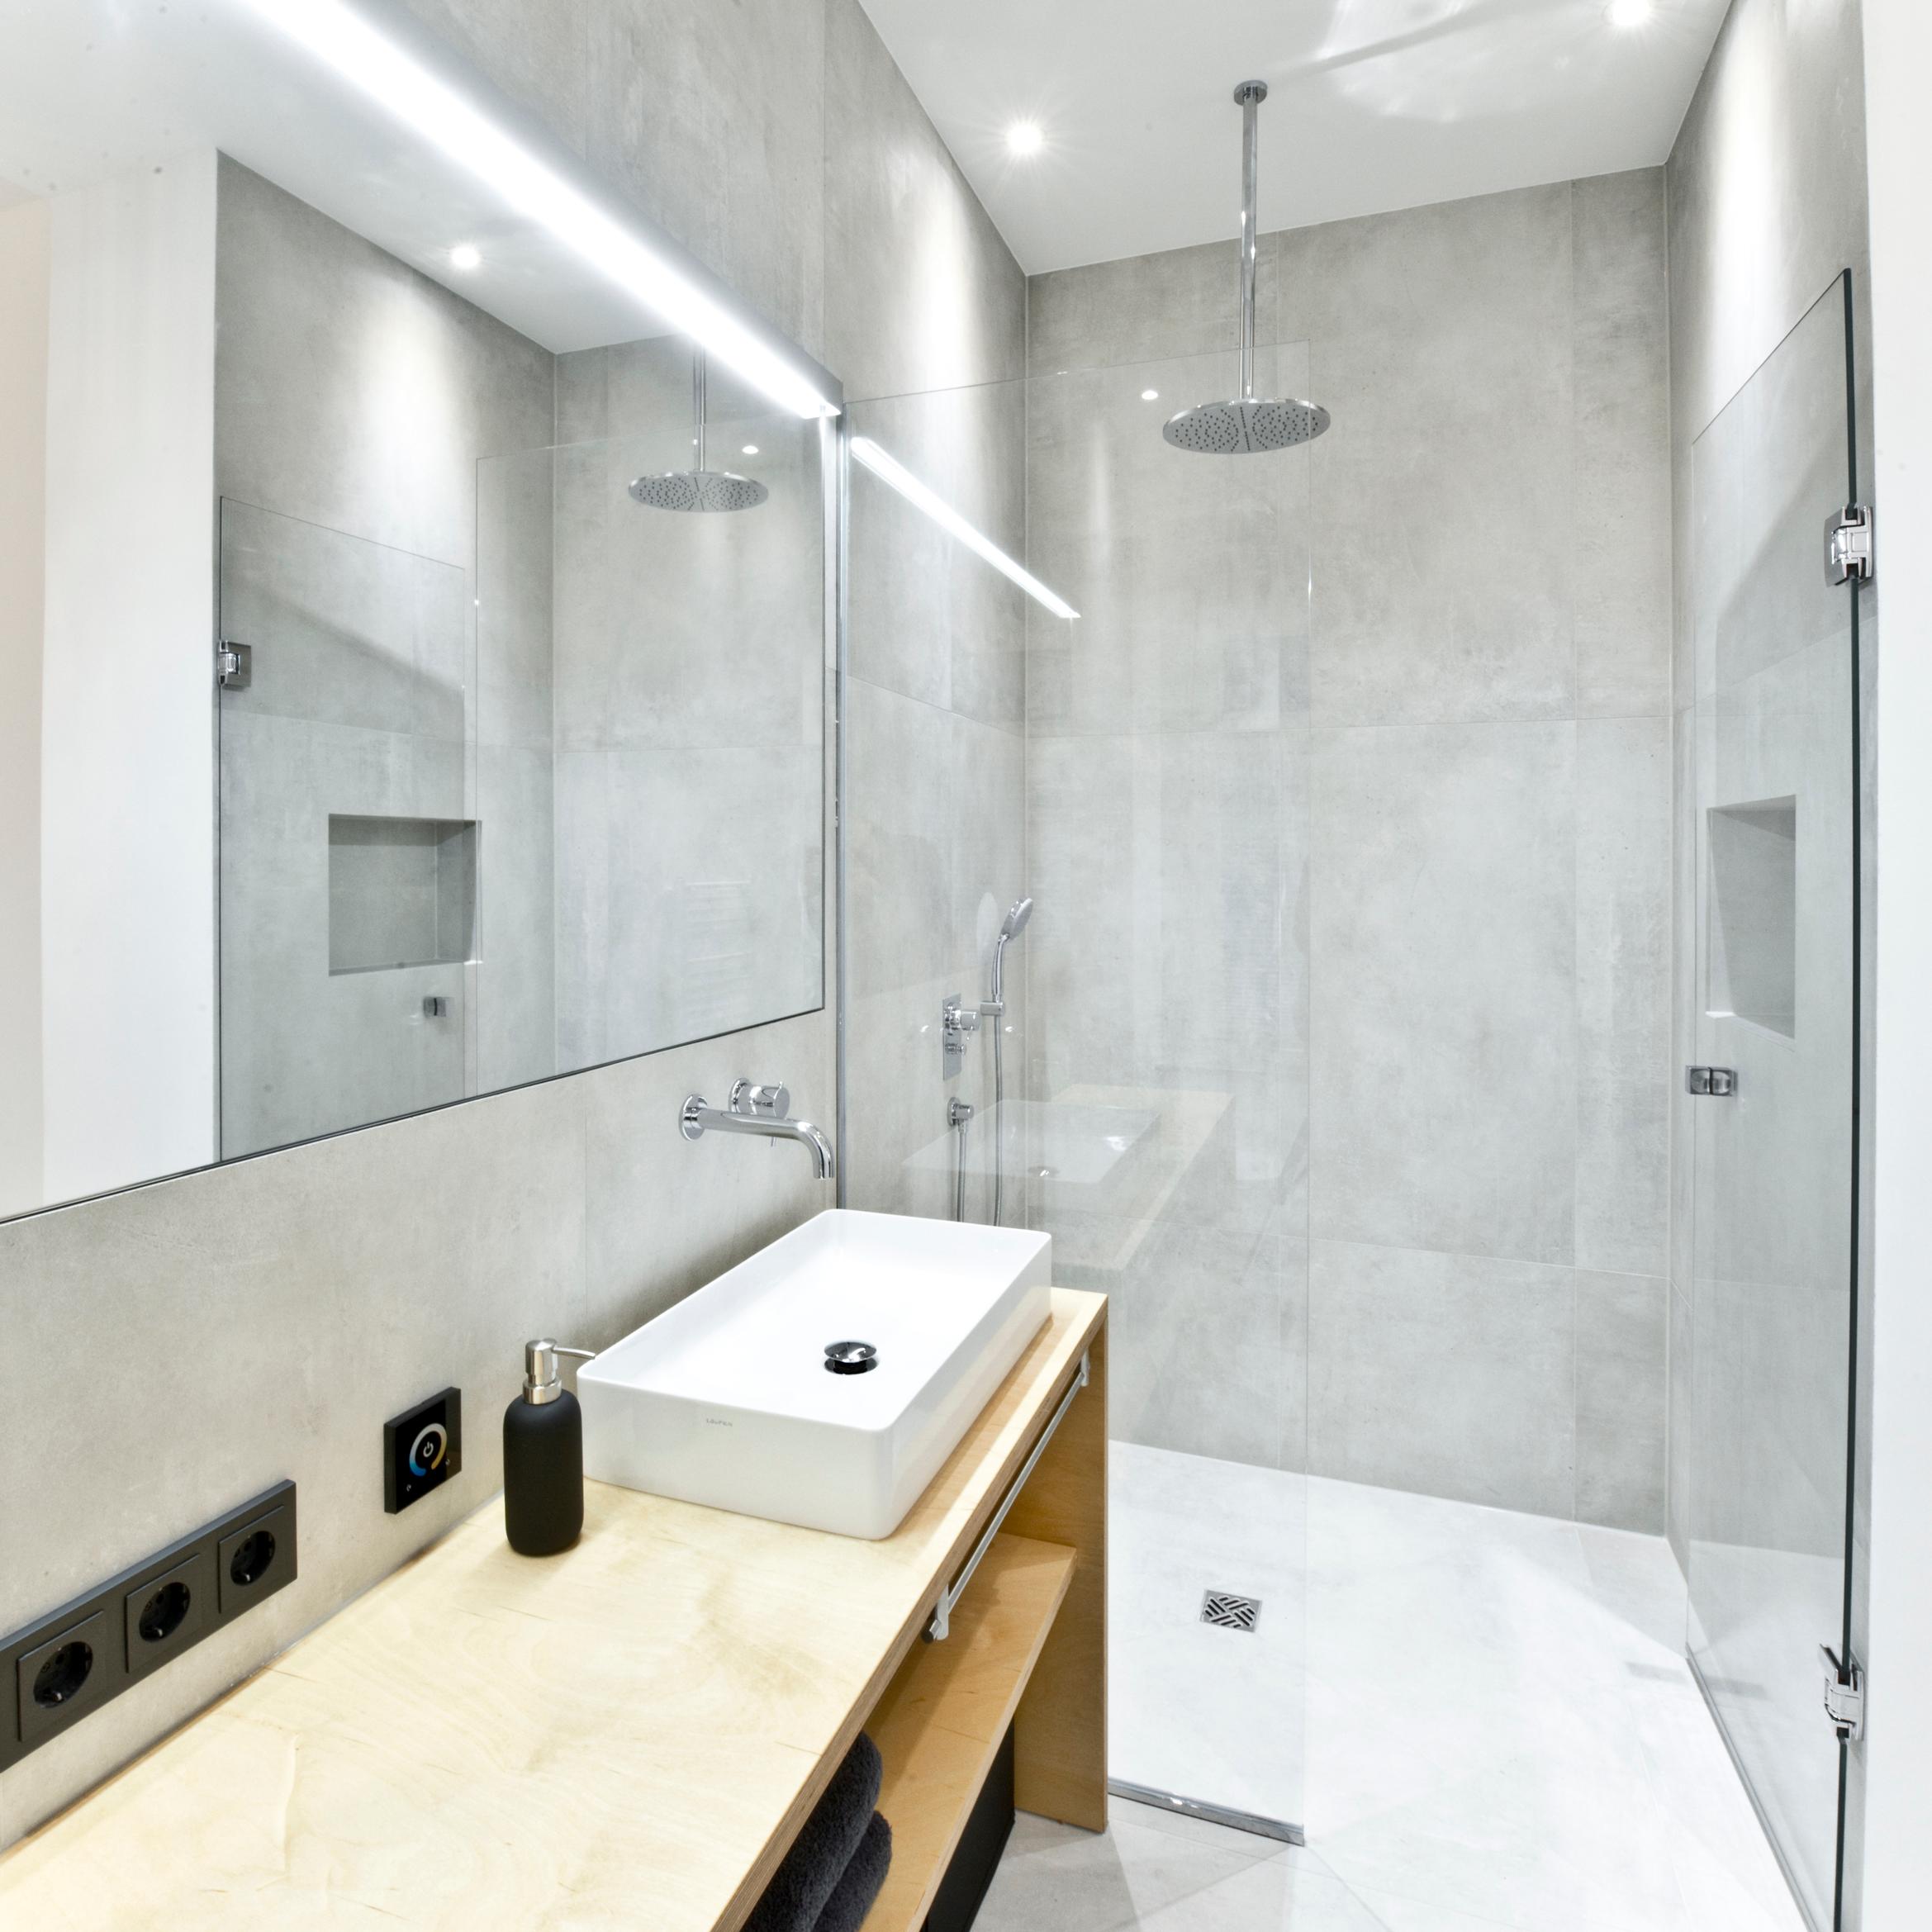 Bad mit großer Dusche #badezimmer #dusche #spiegel #waschtisch #loft #betonfliesen ©Zolaproduction